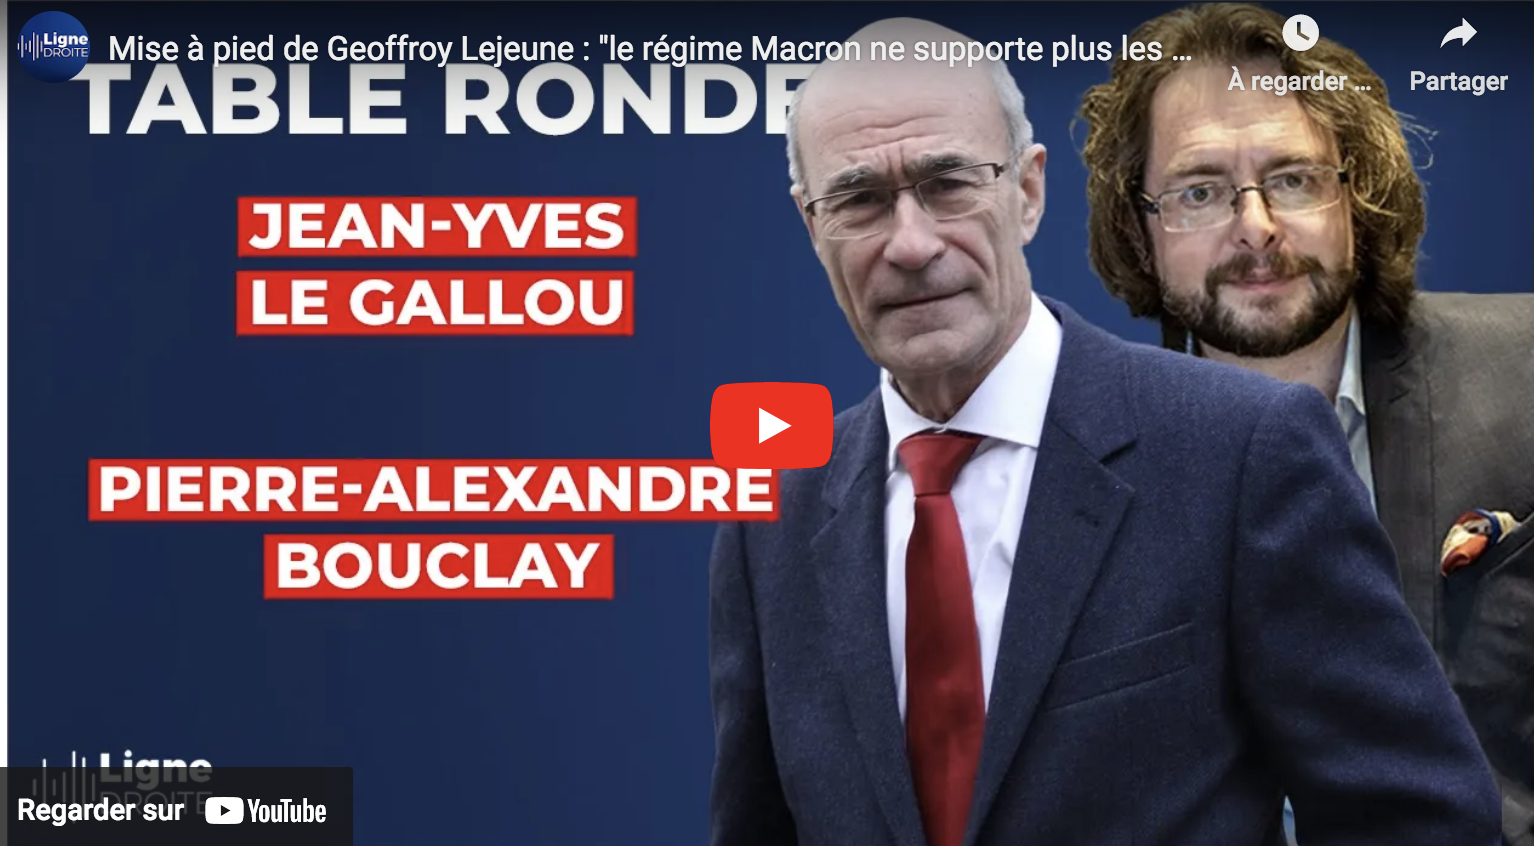 Mise à pied de Geoffroy Lejeune : “Le régime Macron ne supporte plus les médias indépendants !” (VIDÉO)